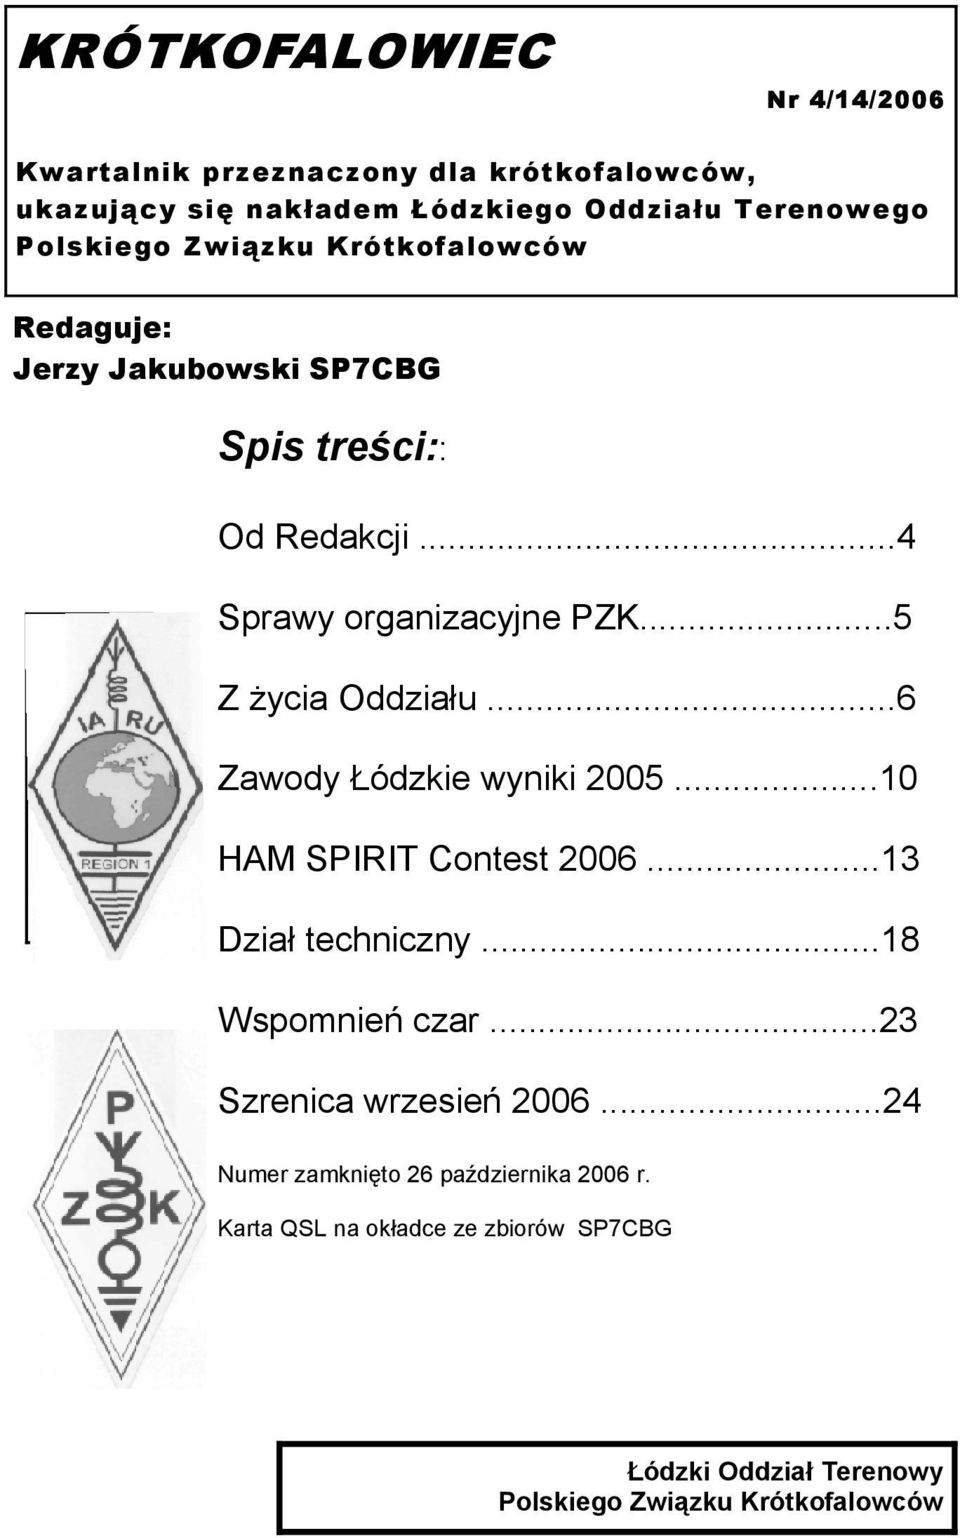 ..6 Zawody Łódzkie wyniki 2005...10 HAM SPIRIT Contest 2006...13 Dział techniczny...18 Wspomnień czar...23 Szrenica wrzesień 2006.